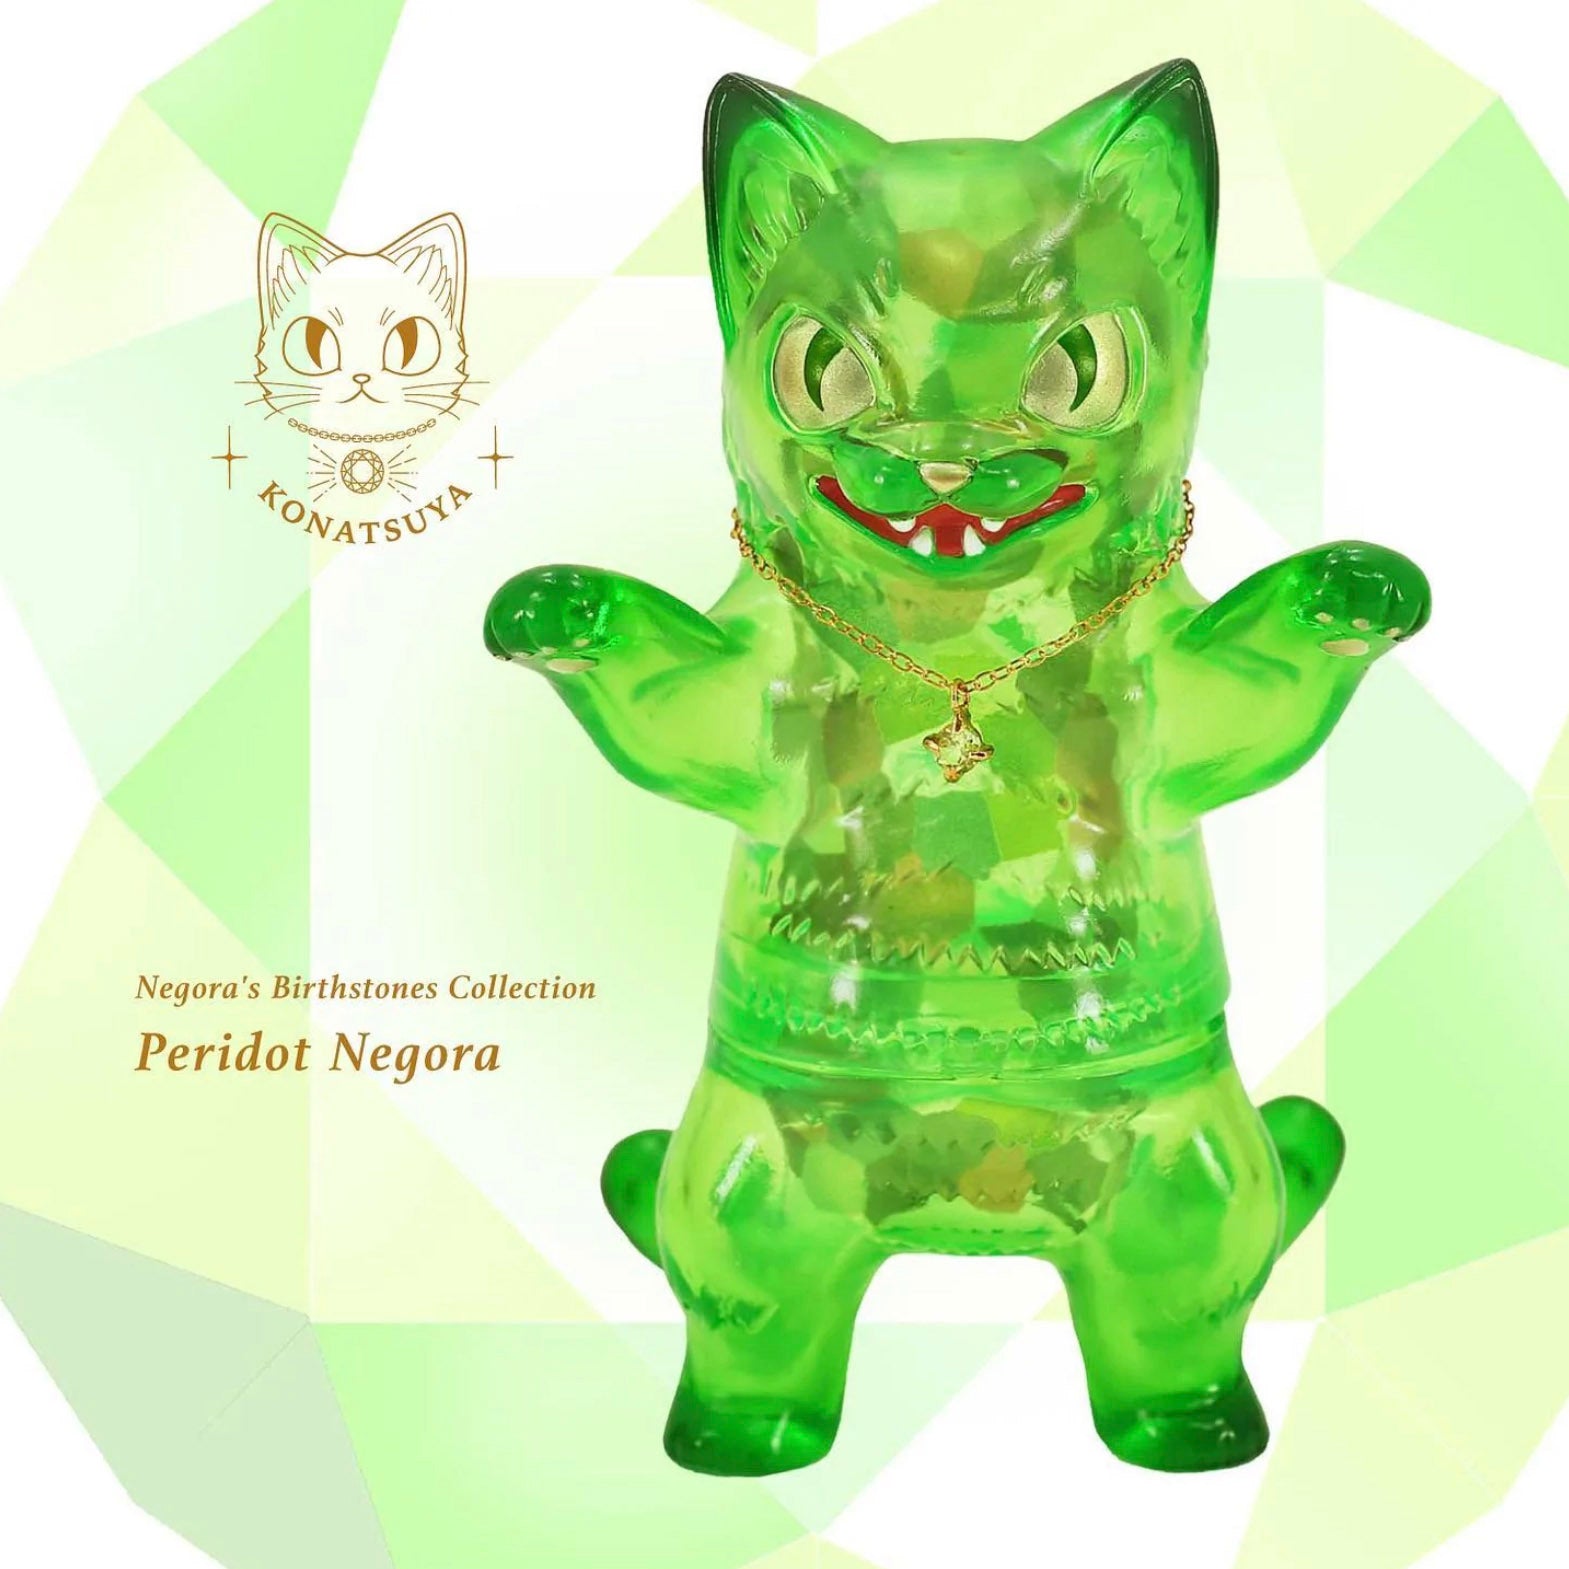 Negora Birthstone Collection (Peridot Version) Sofubi Art Toy by Konatsuya